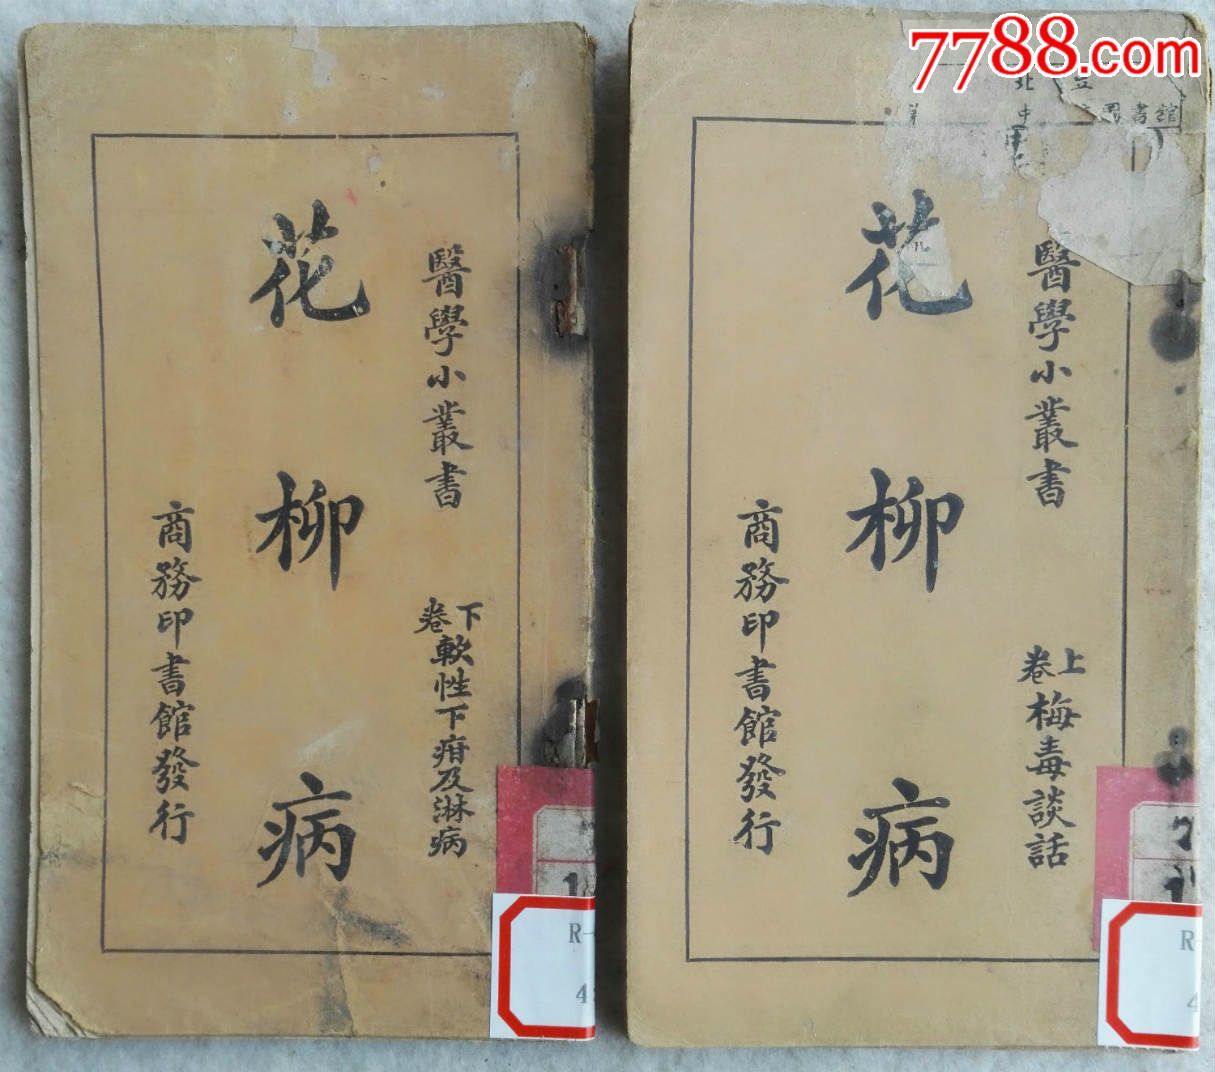 1922年版《柳花病》上下两册-价格:320元-se3